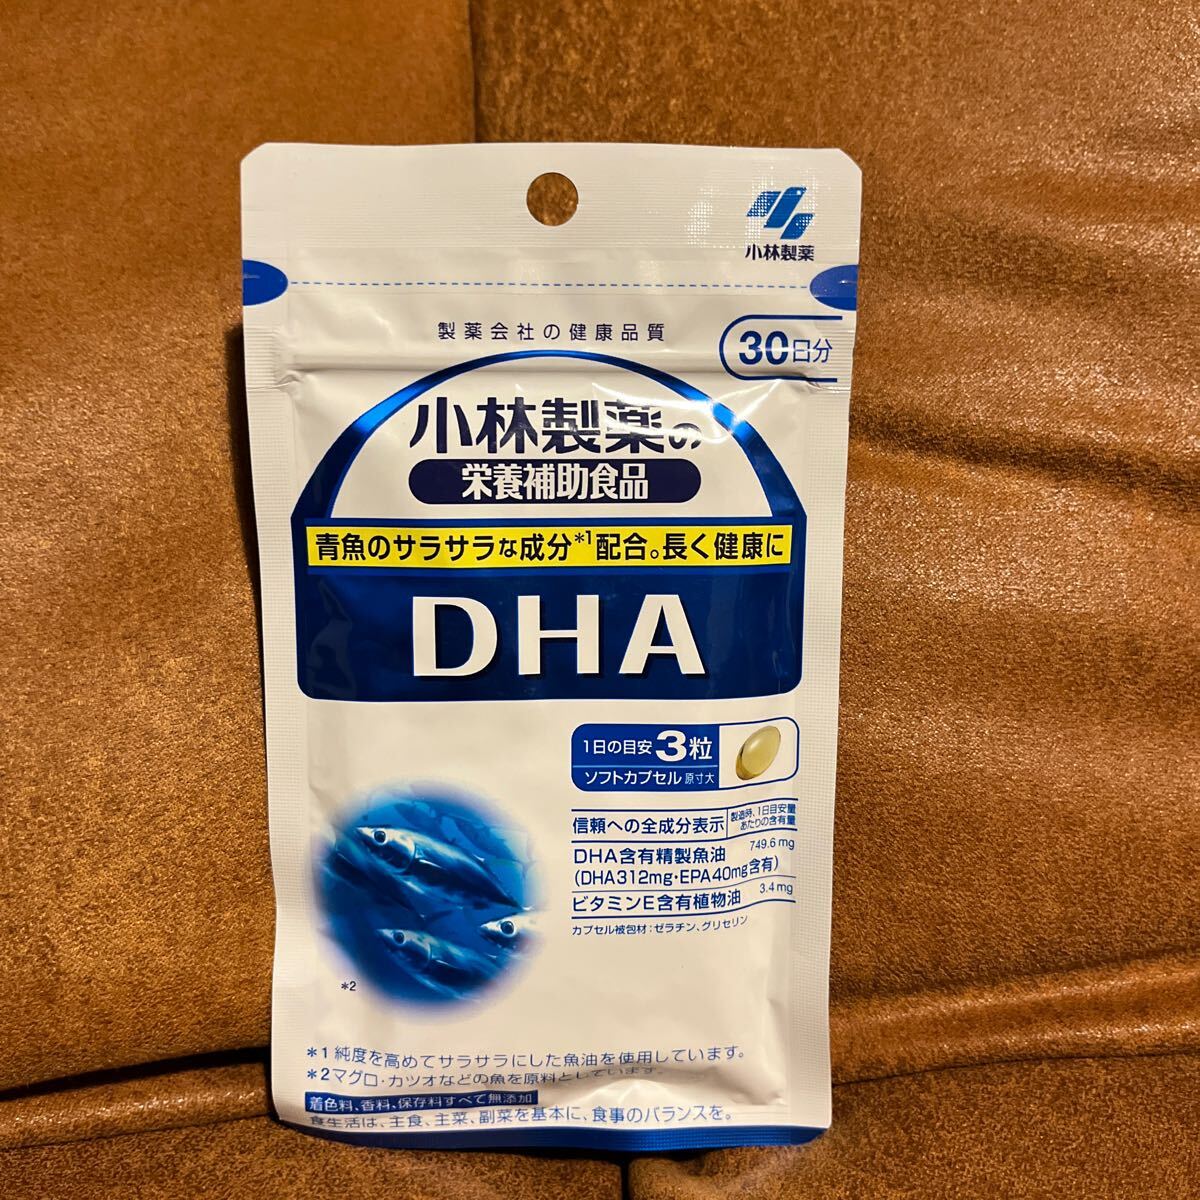 [ free shipping ] Kobayashi made medicine DHA 30 day minute 90 bead 